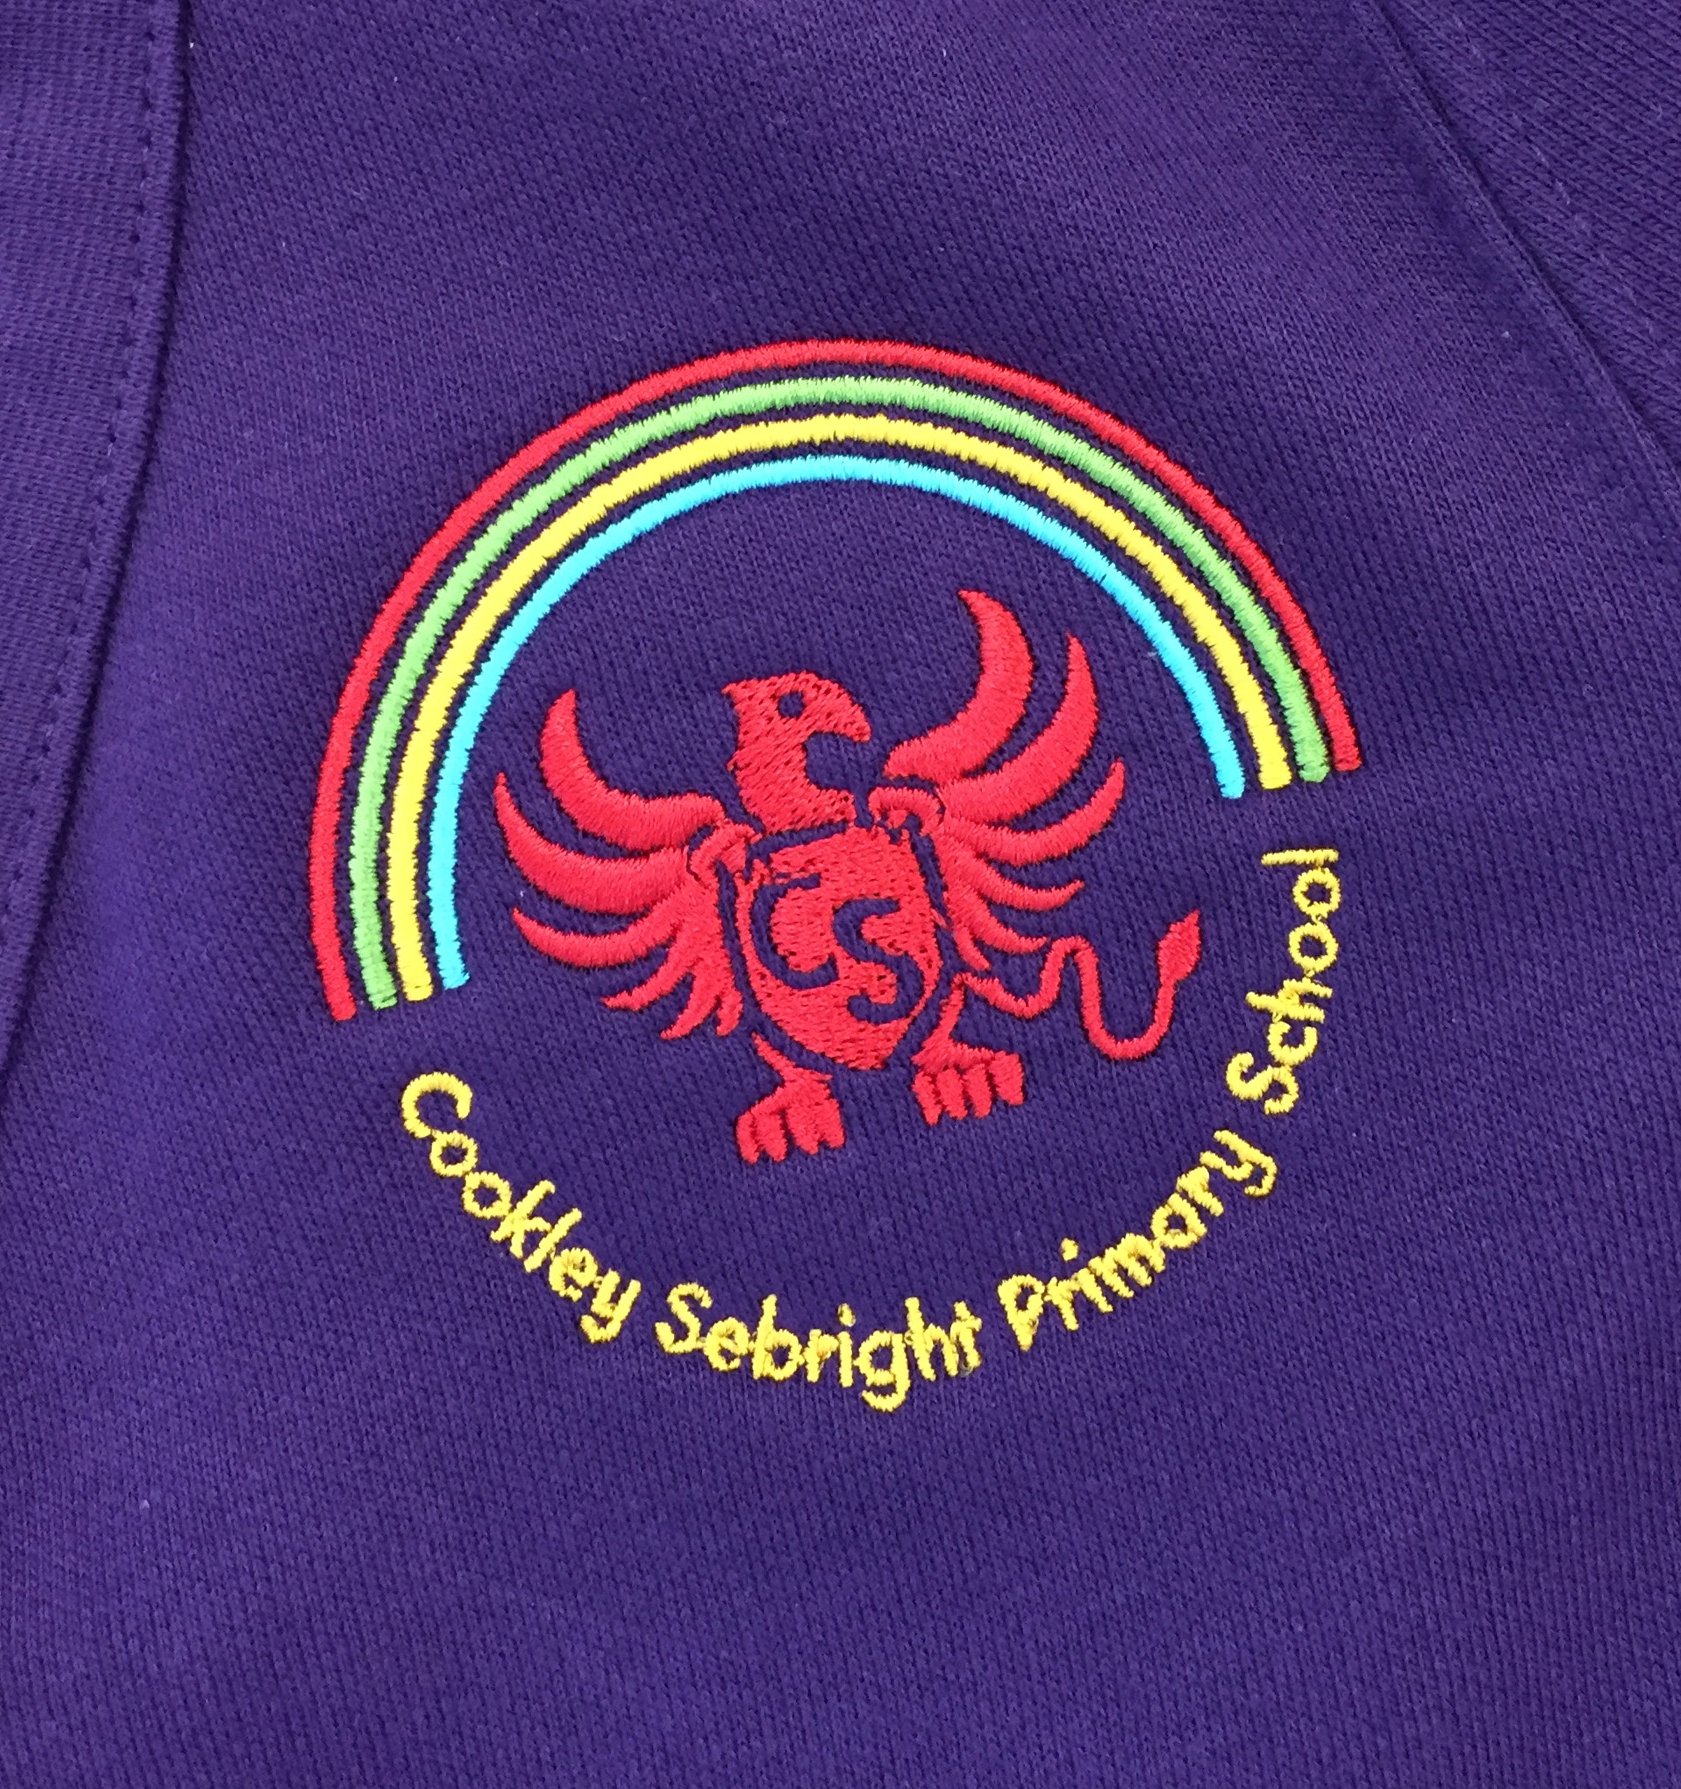 Emblem on purple.jpg